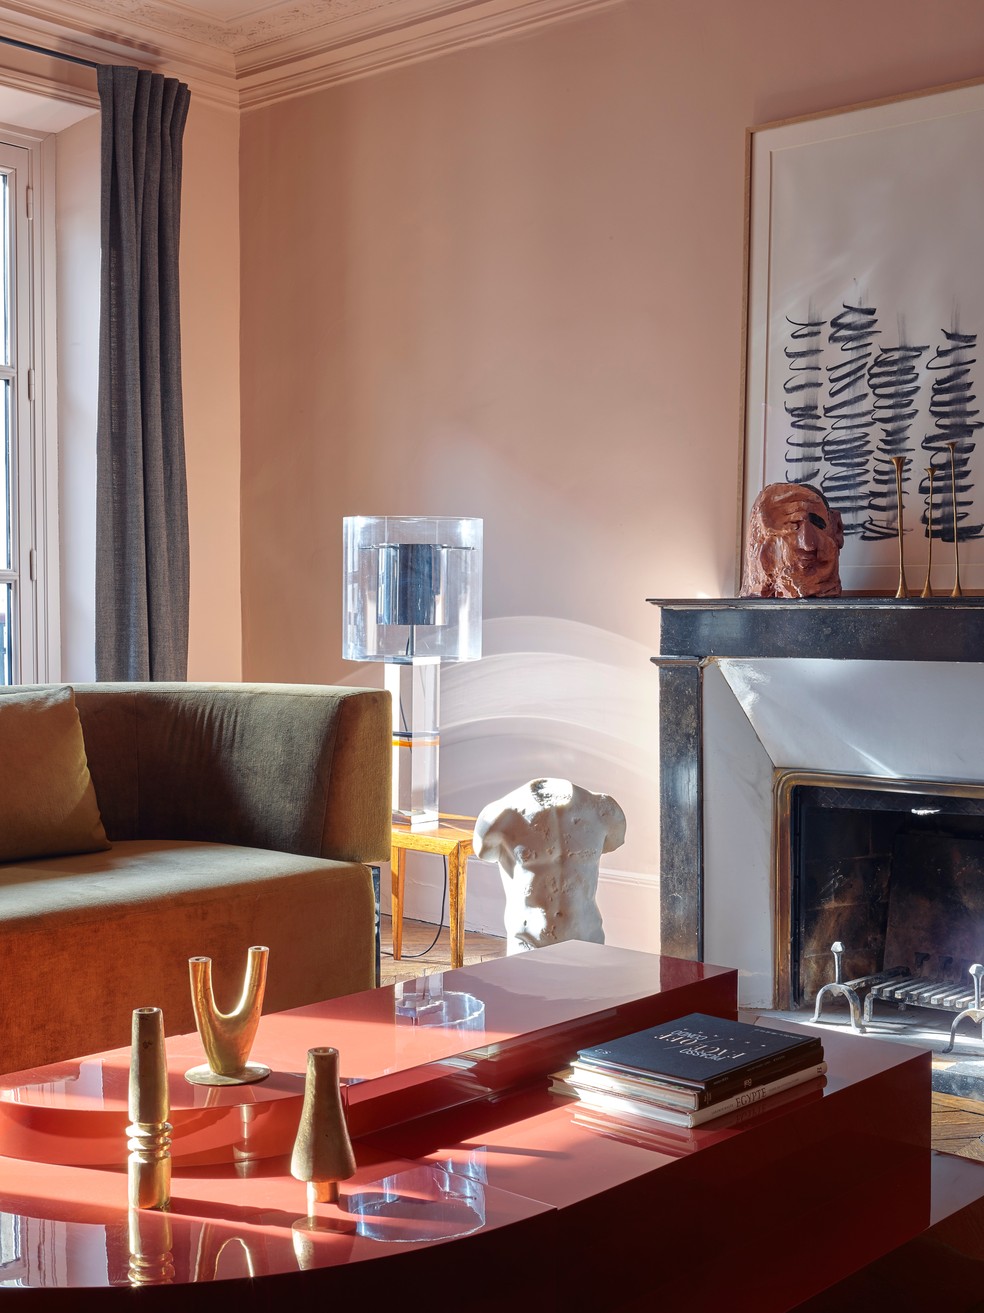 Cores vibrantes e decorações com formas orgânicas compõem a sala de estar — Foto: Philippe Garcia